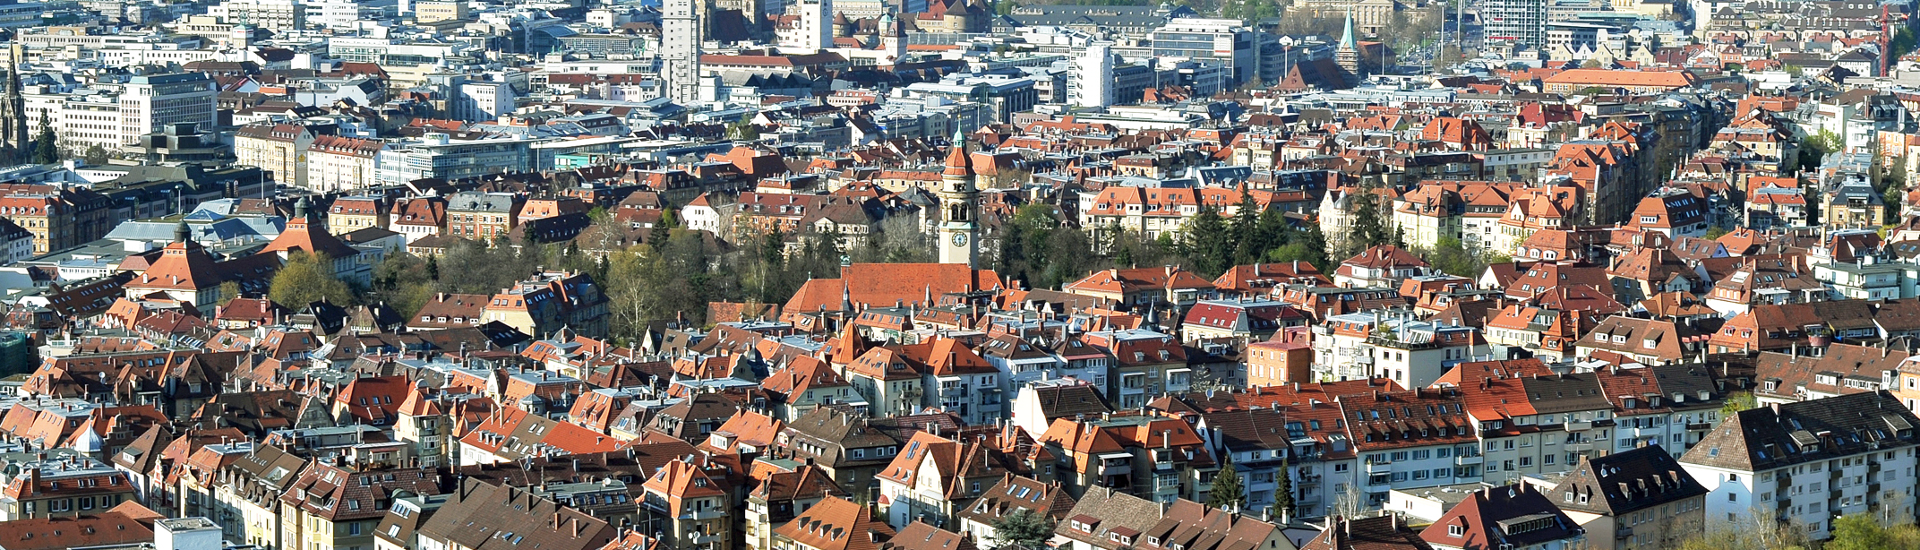 Blick über die Dächer einer Stadt